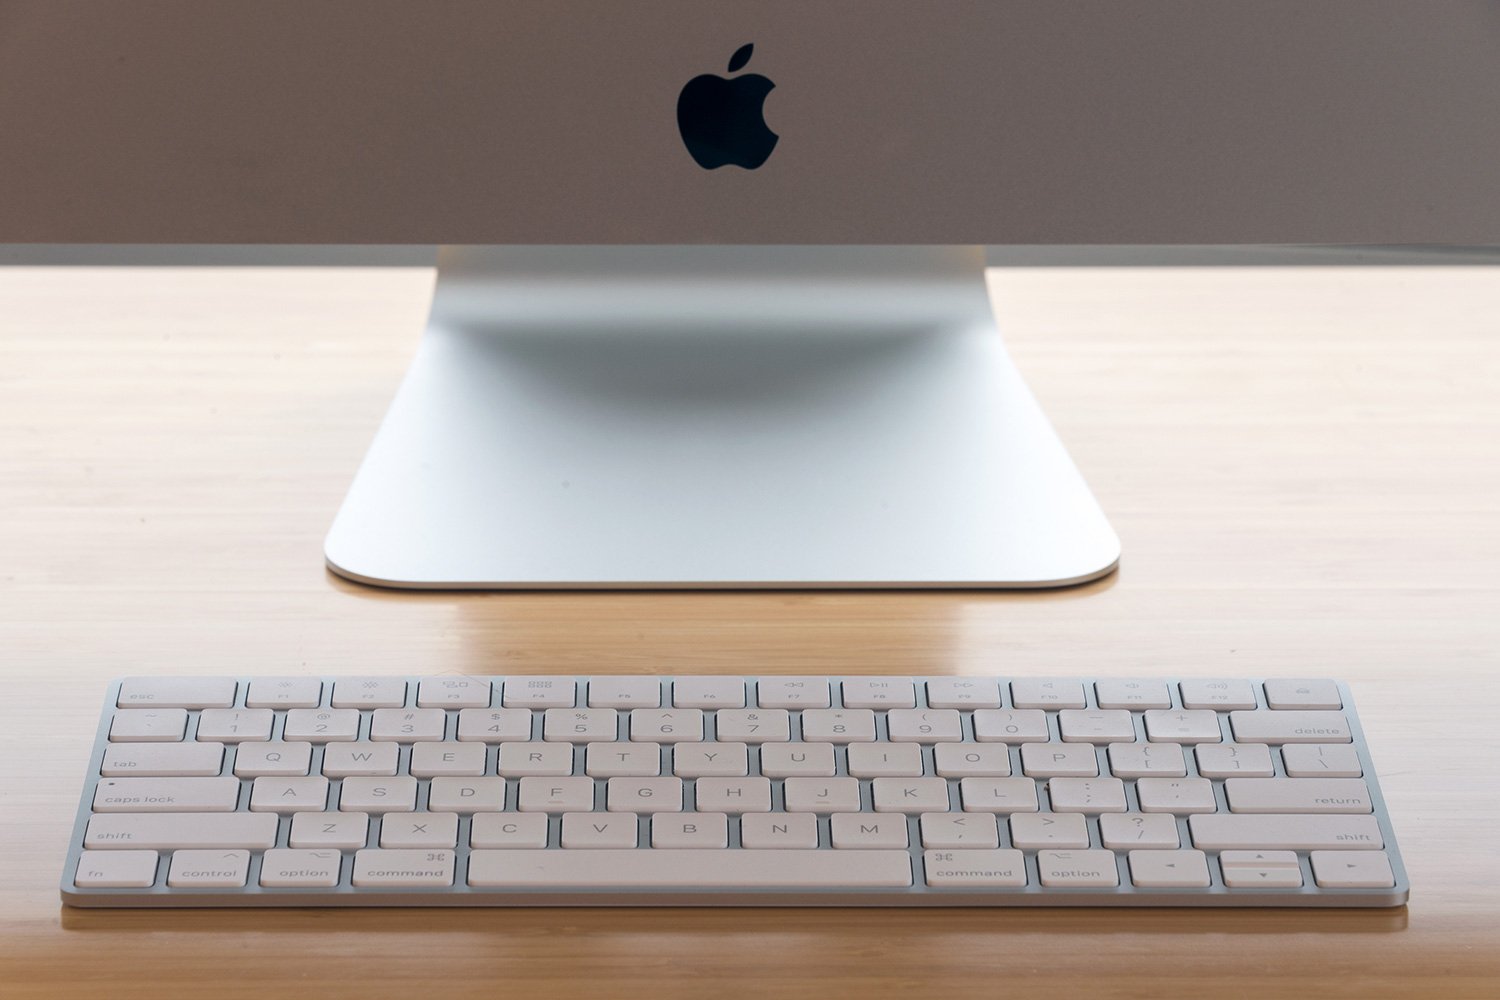 Best Apple iMac Deals: Get an Apple desktop for $479